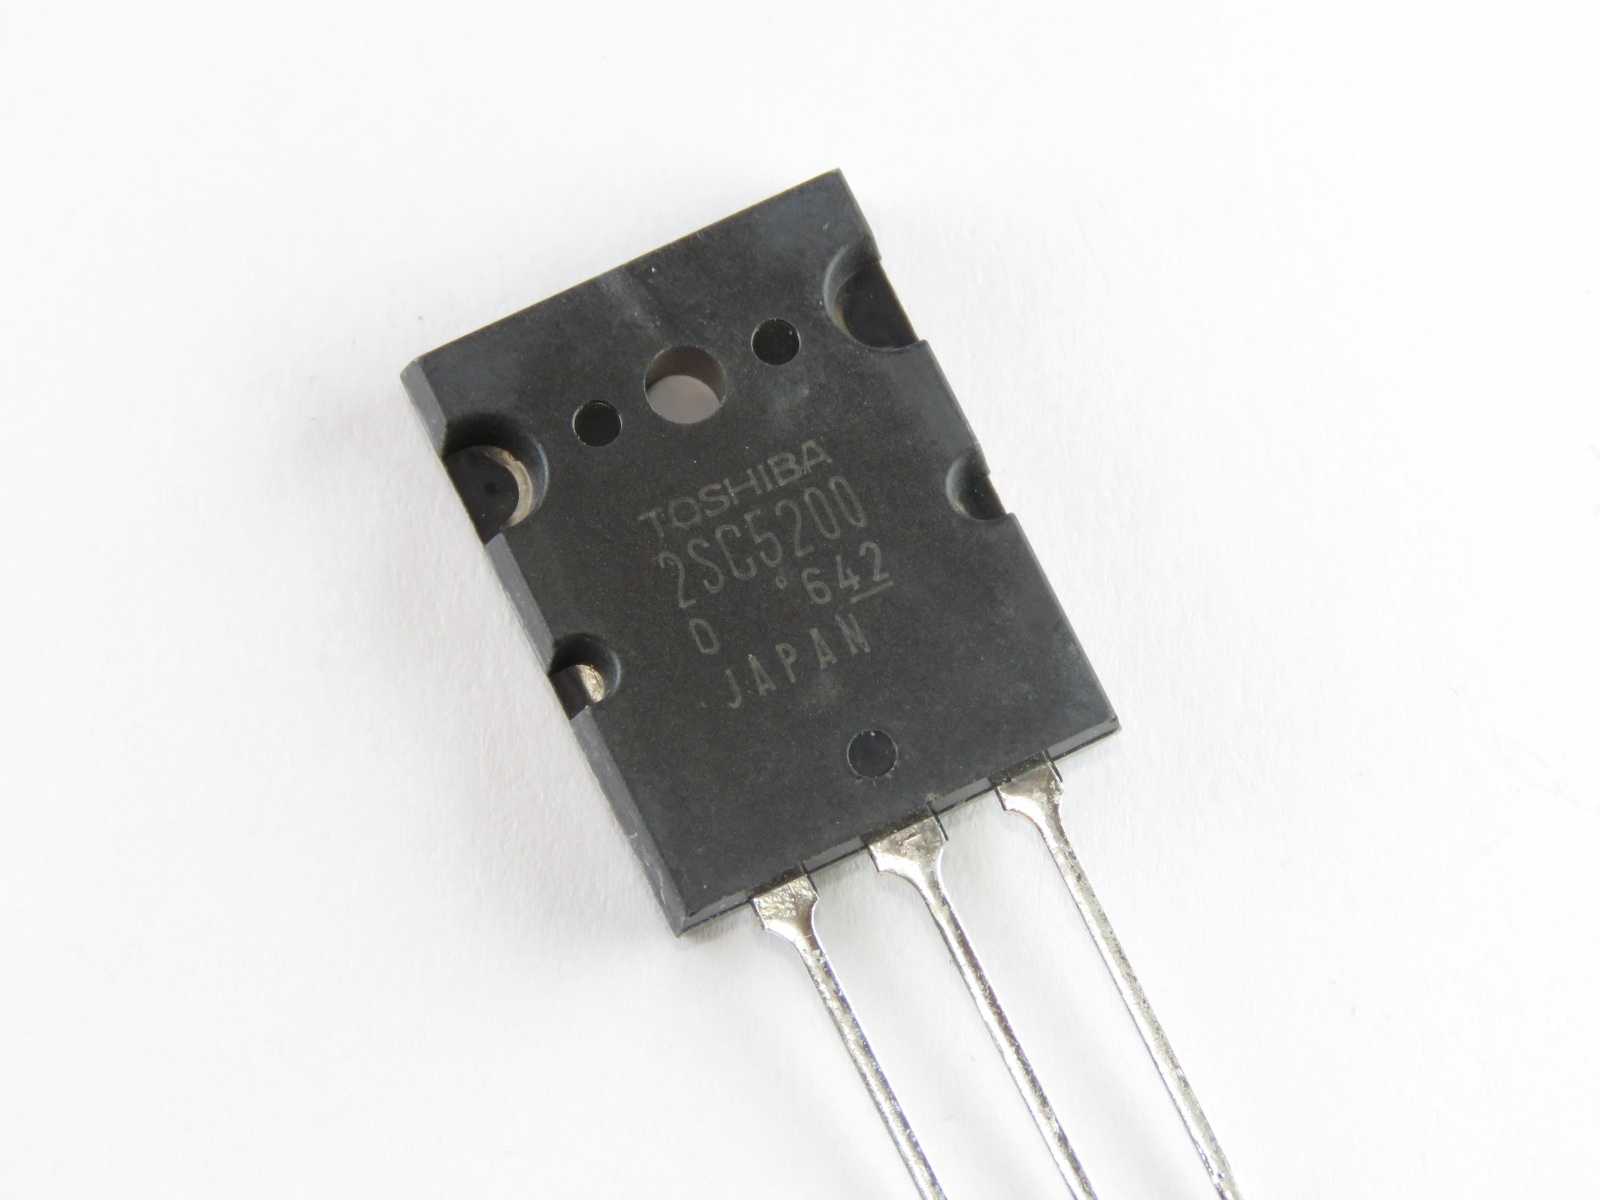 Импортные аналоги отечественных транзисторов
		
		таблица соответствия отечественных транзисторов импортным аналогам